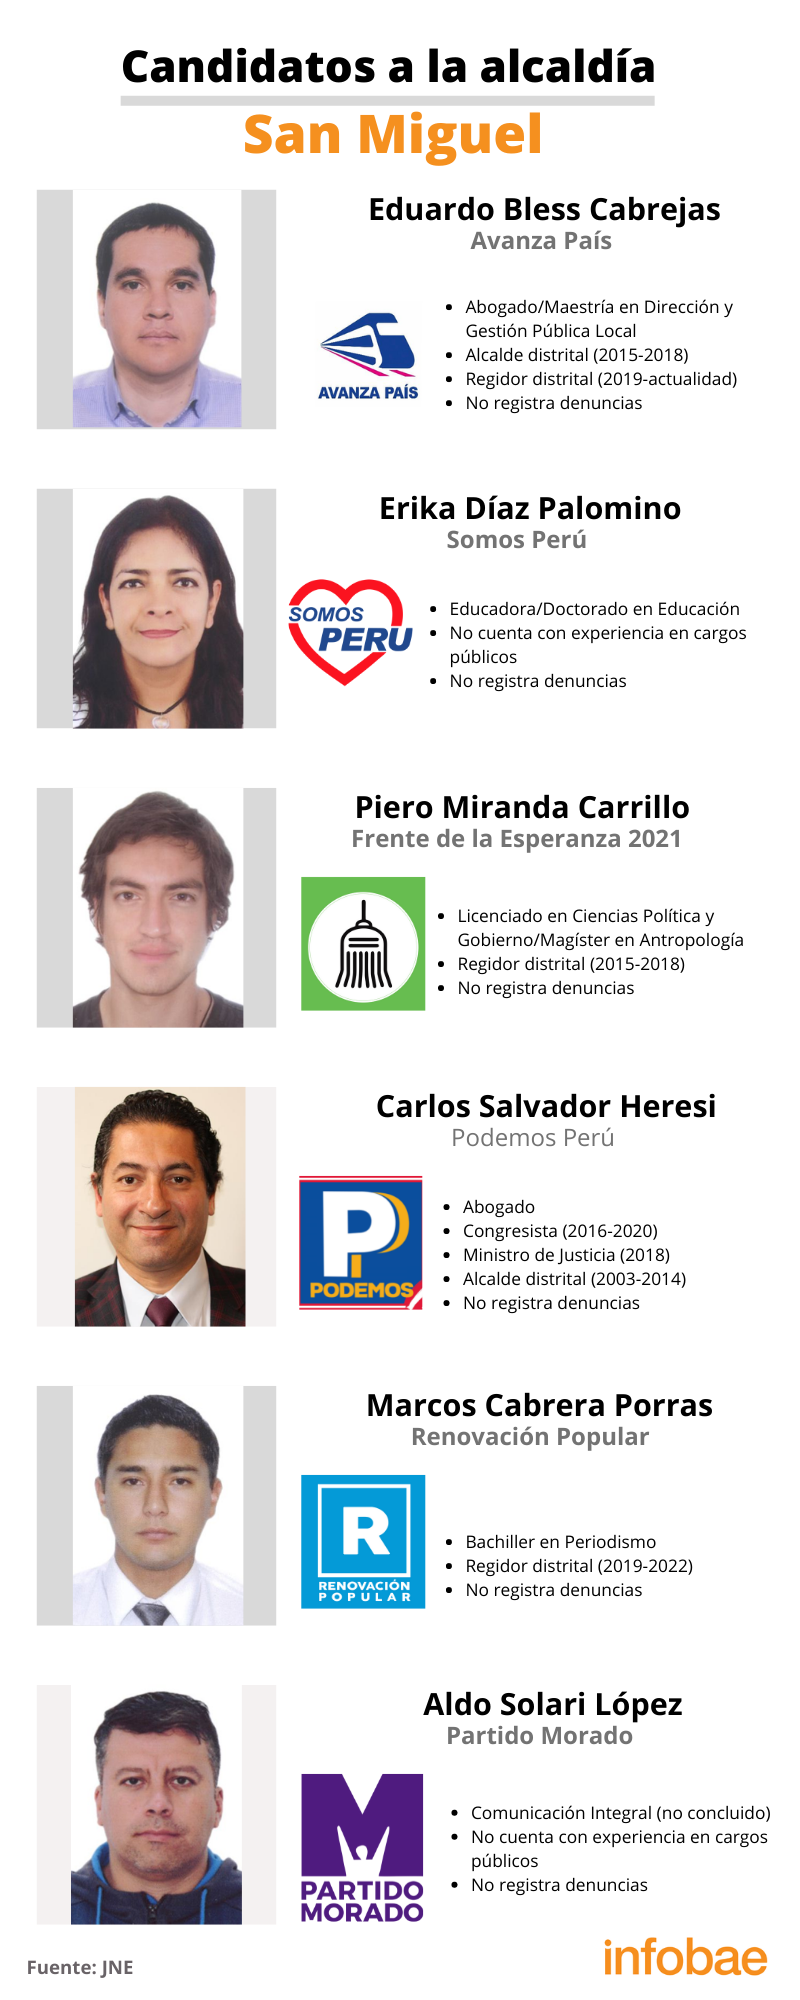 Candidatos a la alcaldía del distrito de San Miguel